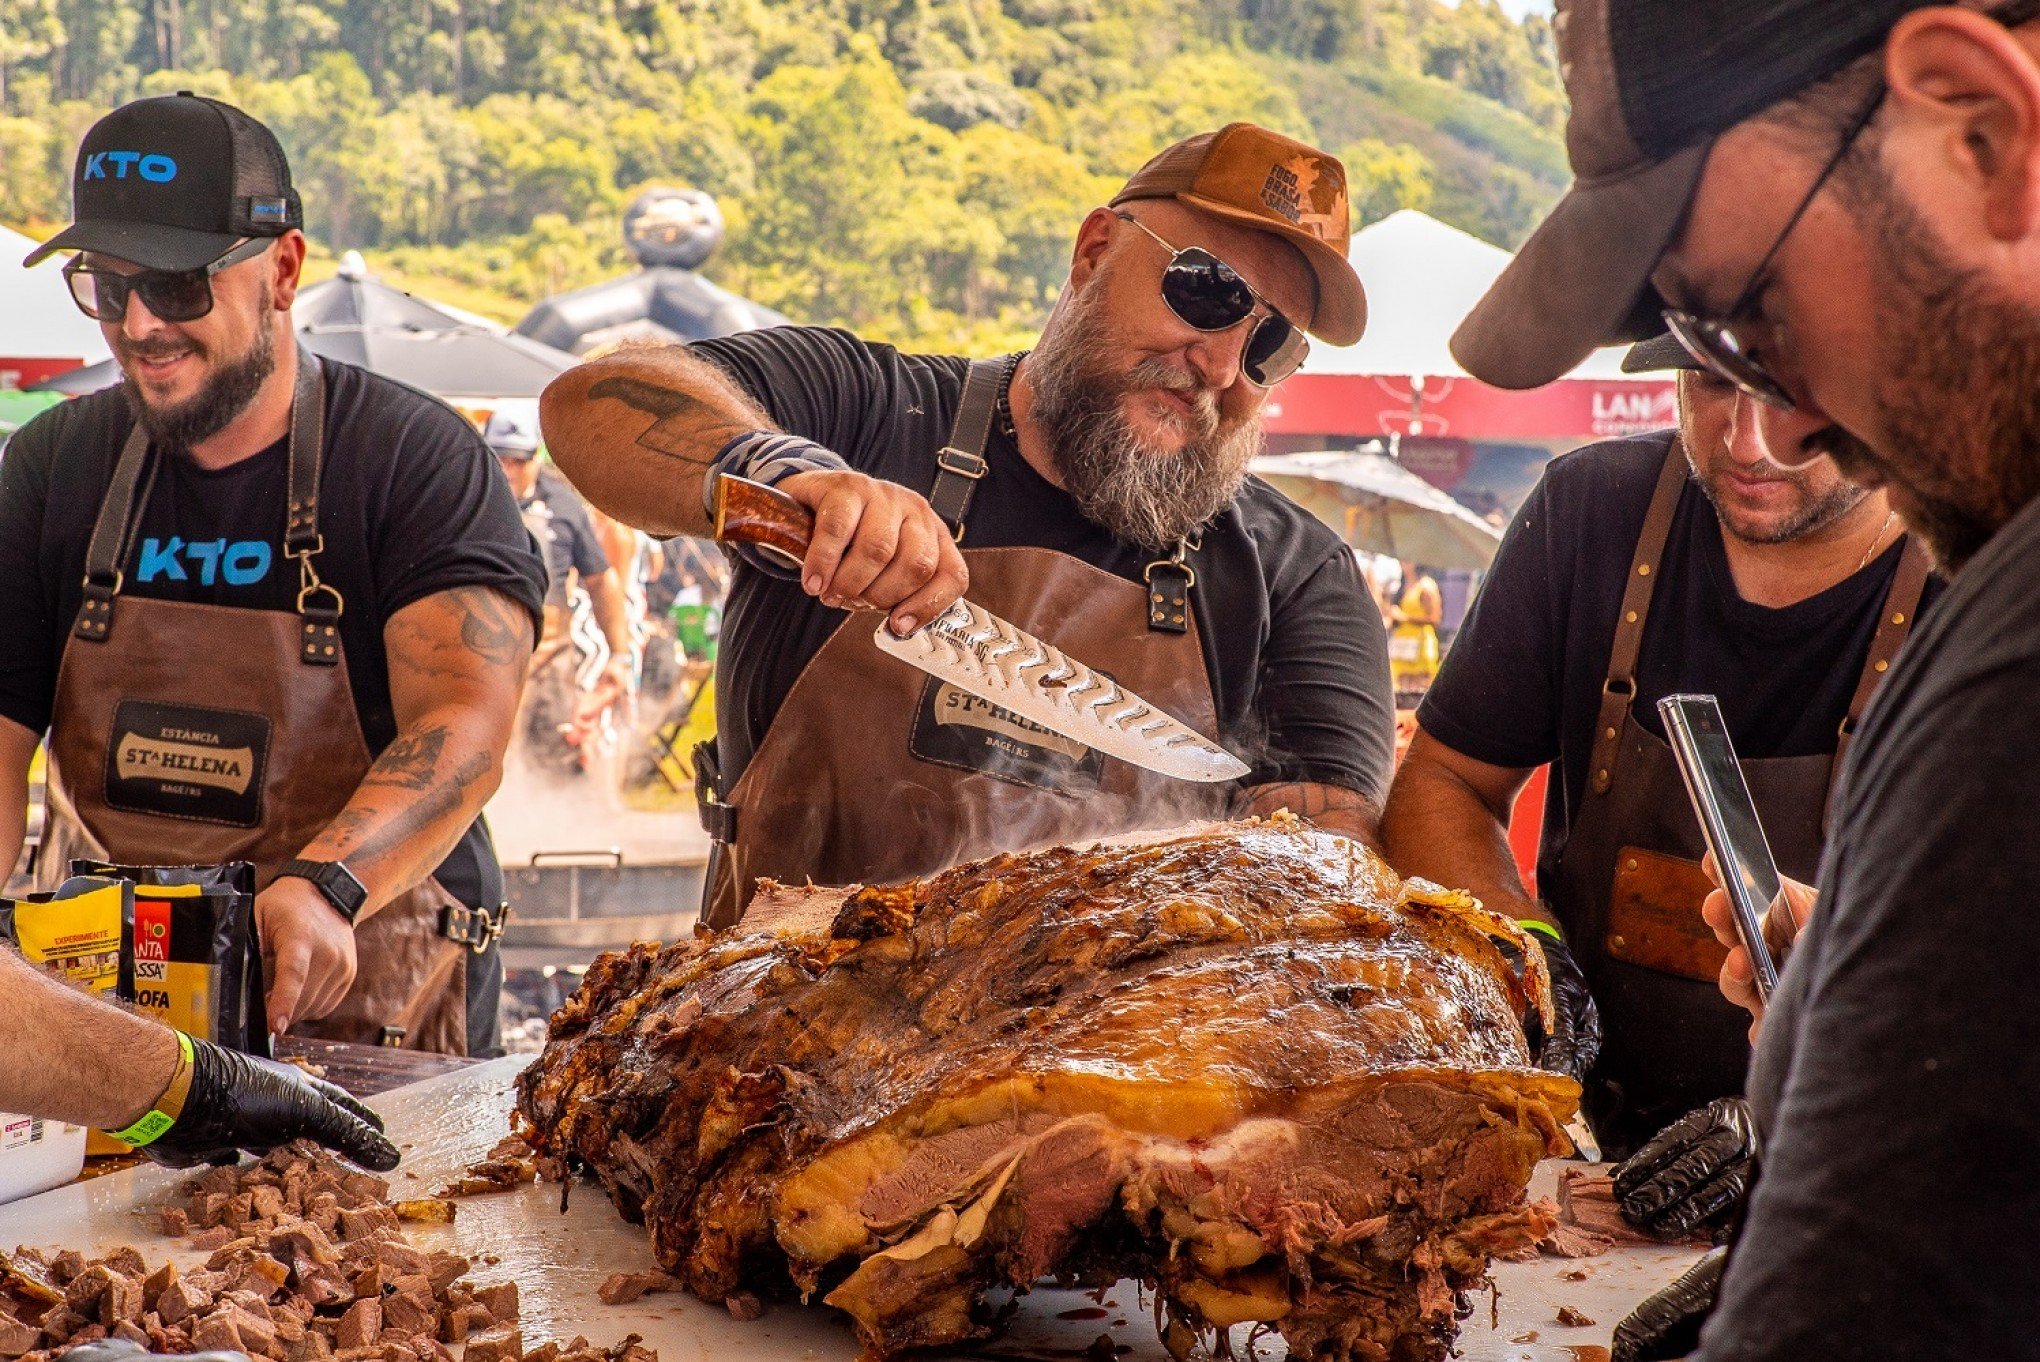 Festival promete três toneladas de churrasco e mudanças para próxima edição em Gramado